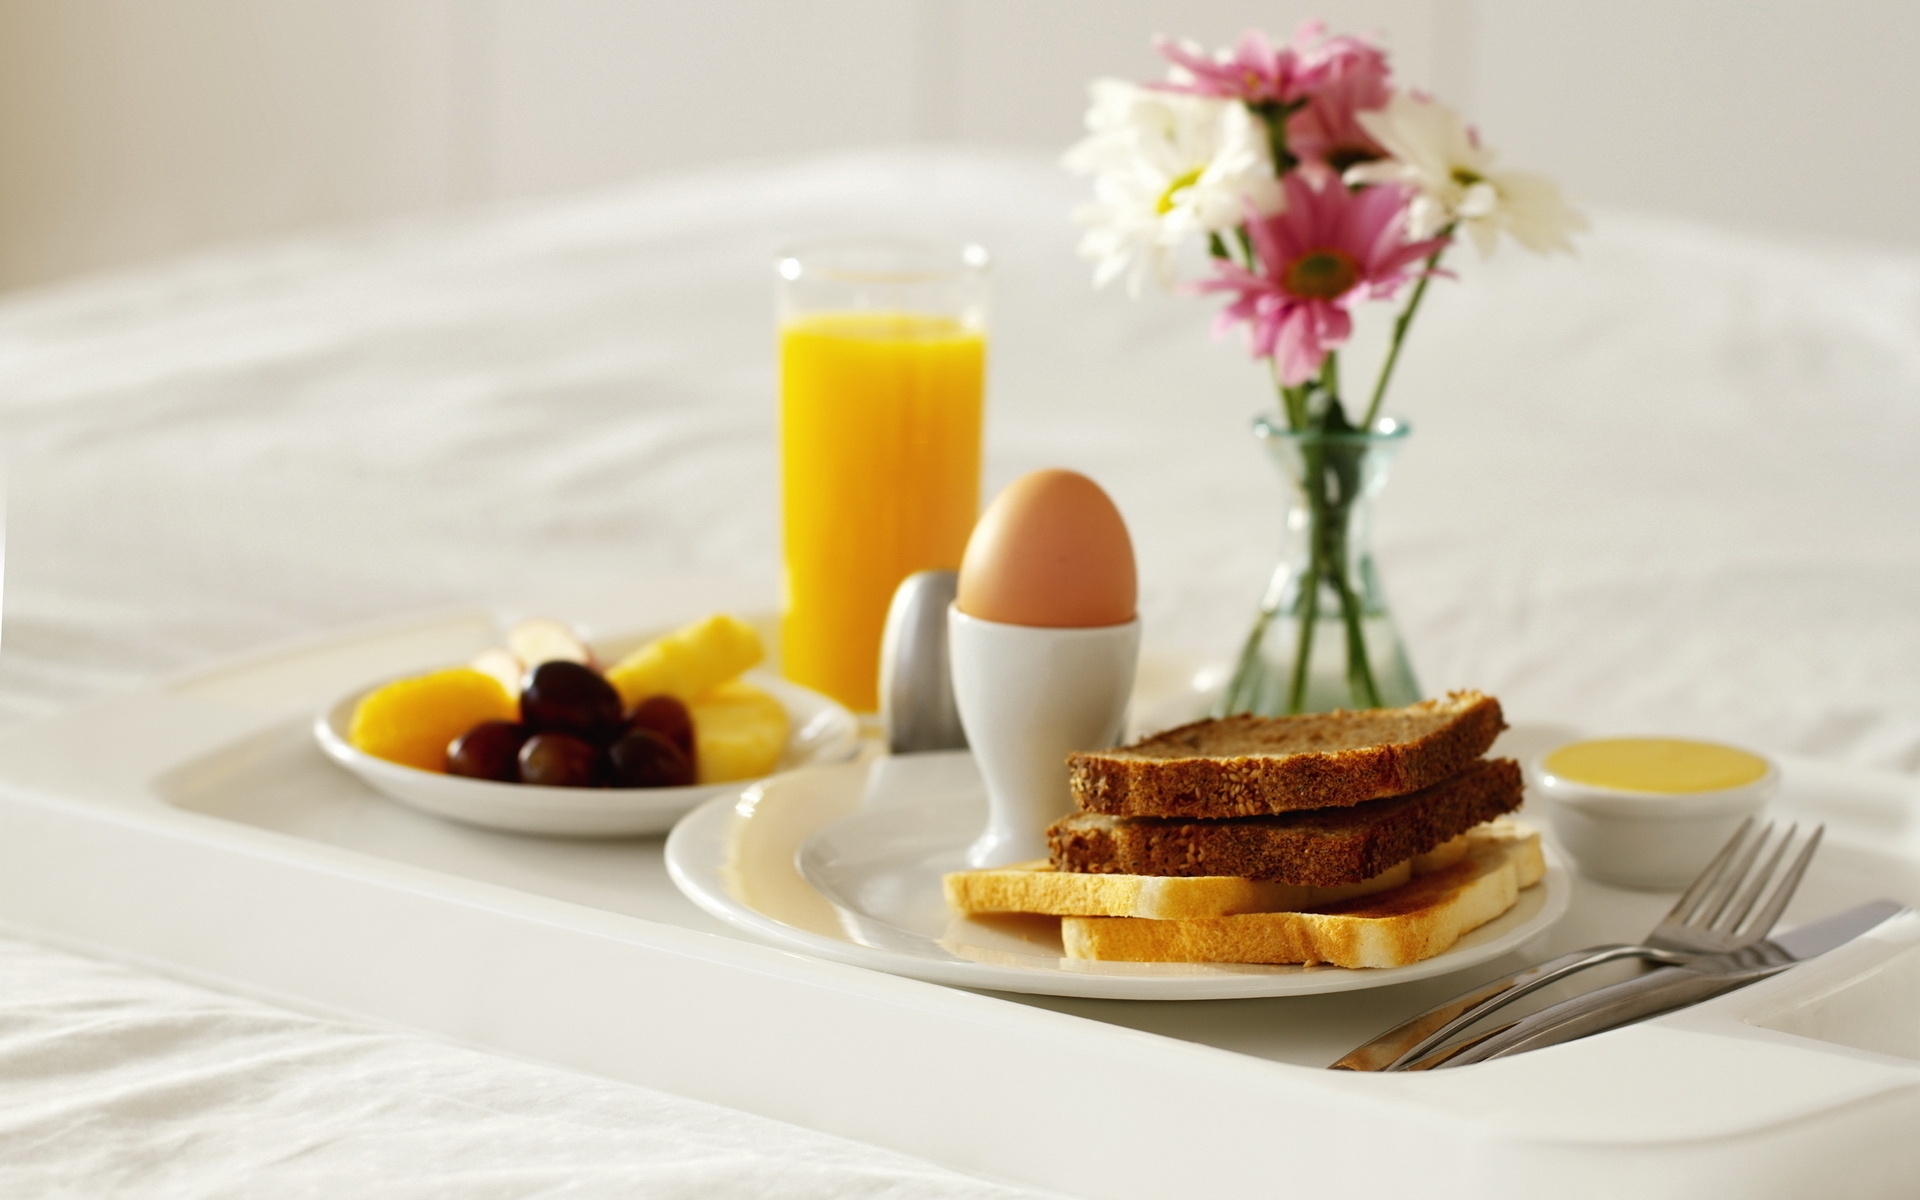 Картинки Завтрак, красивый, еда, яйца, бутерброды фото и обои на рабочий стол